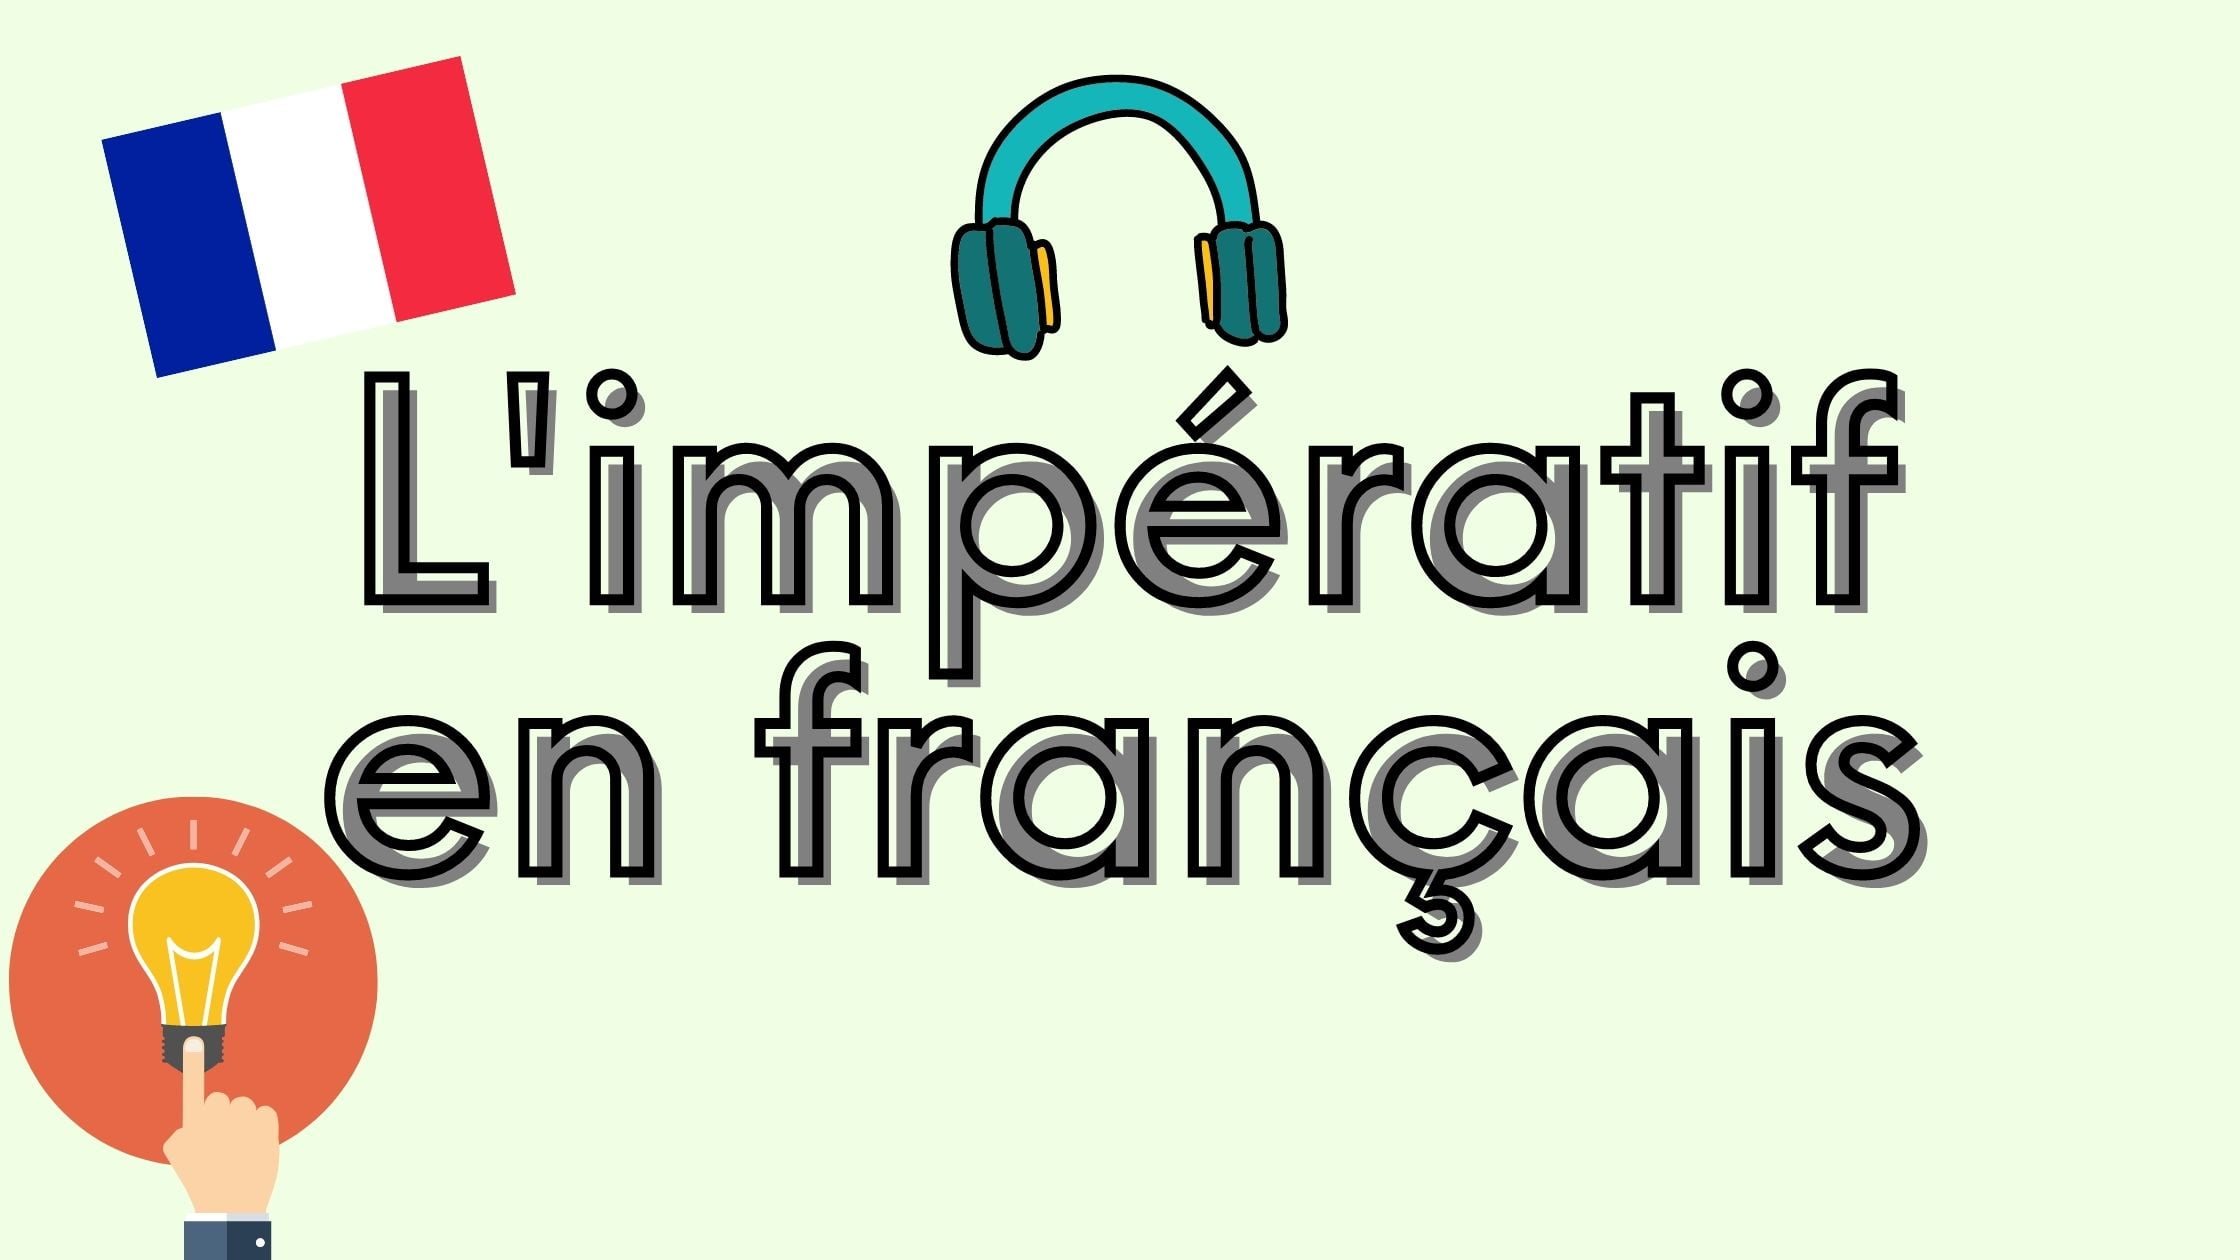 the imperative in French - l'impératif en français